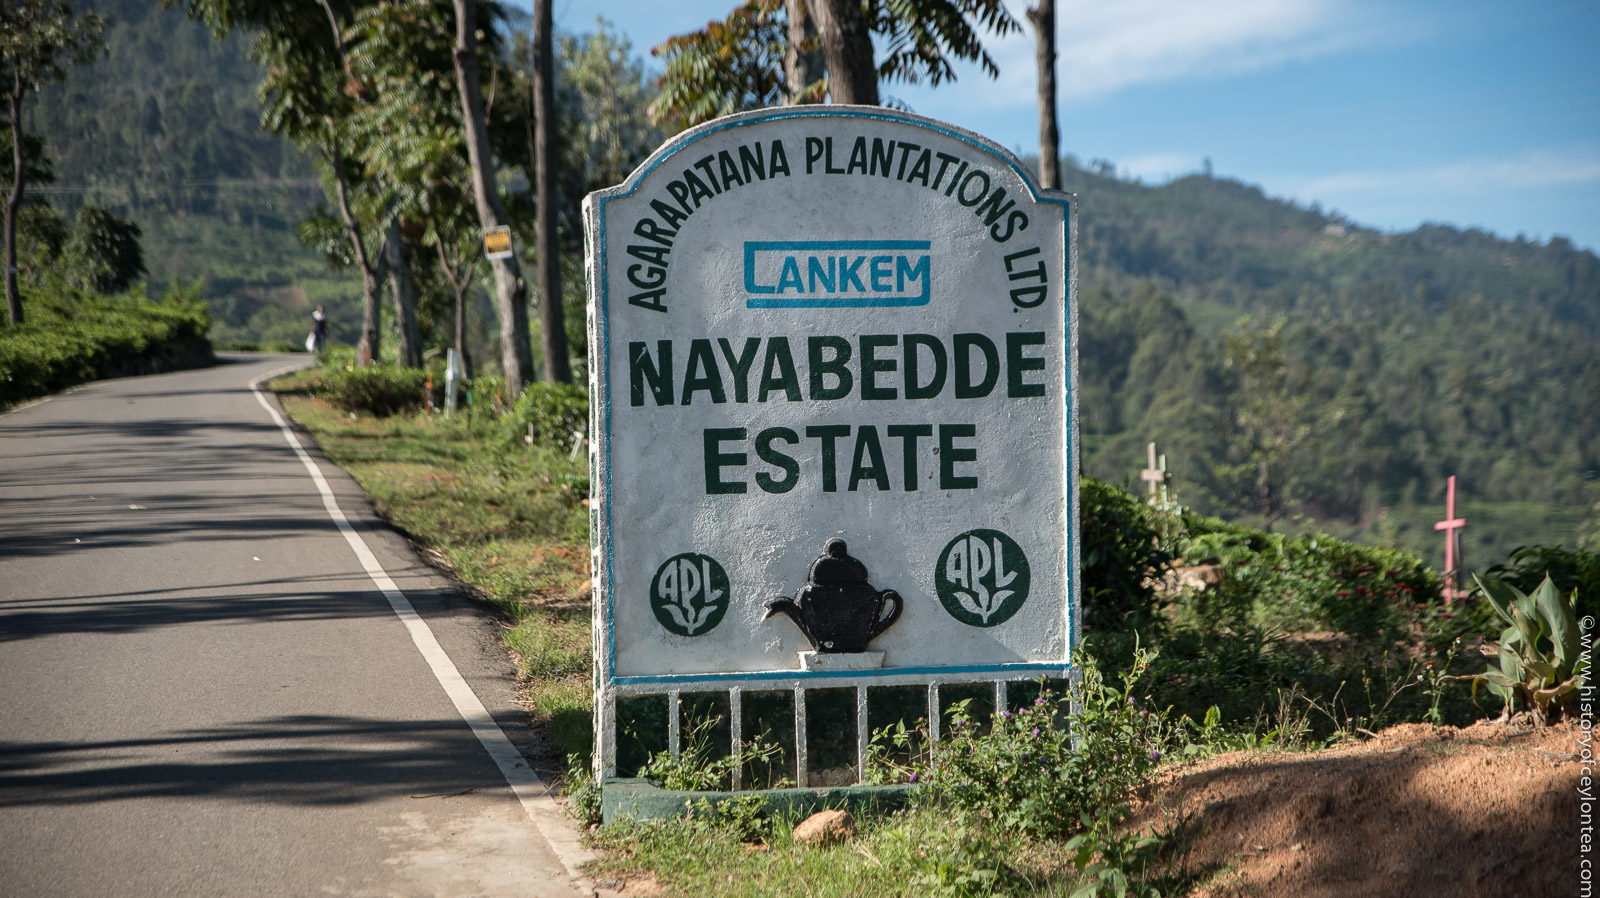 Nayabedde Estate